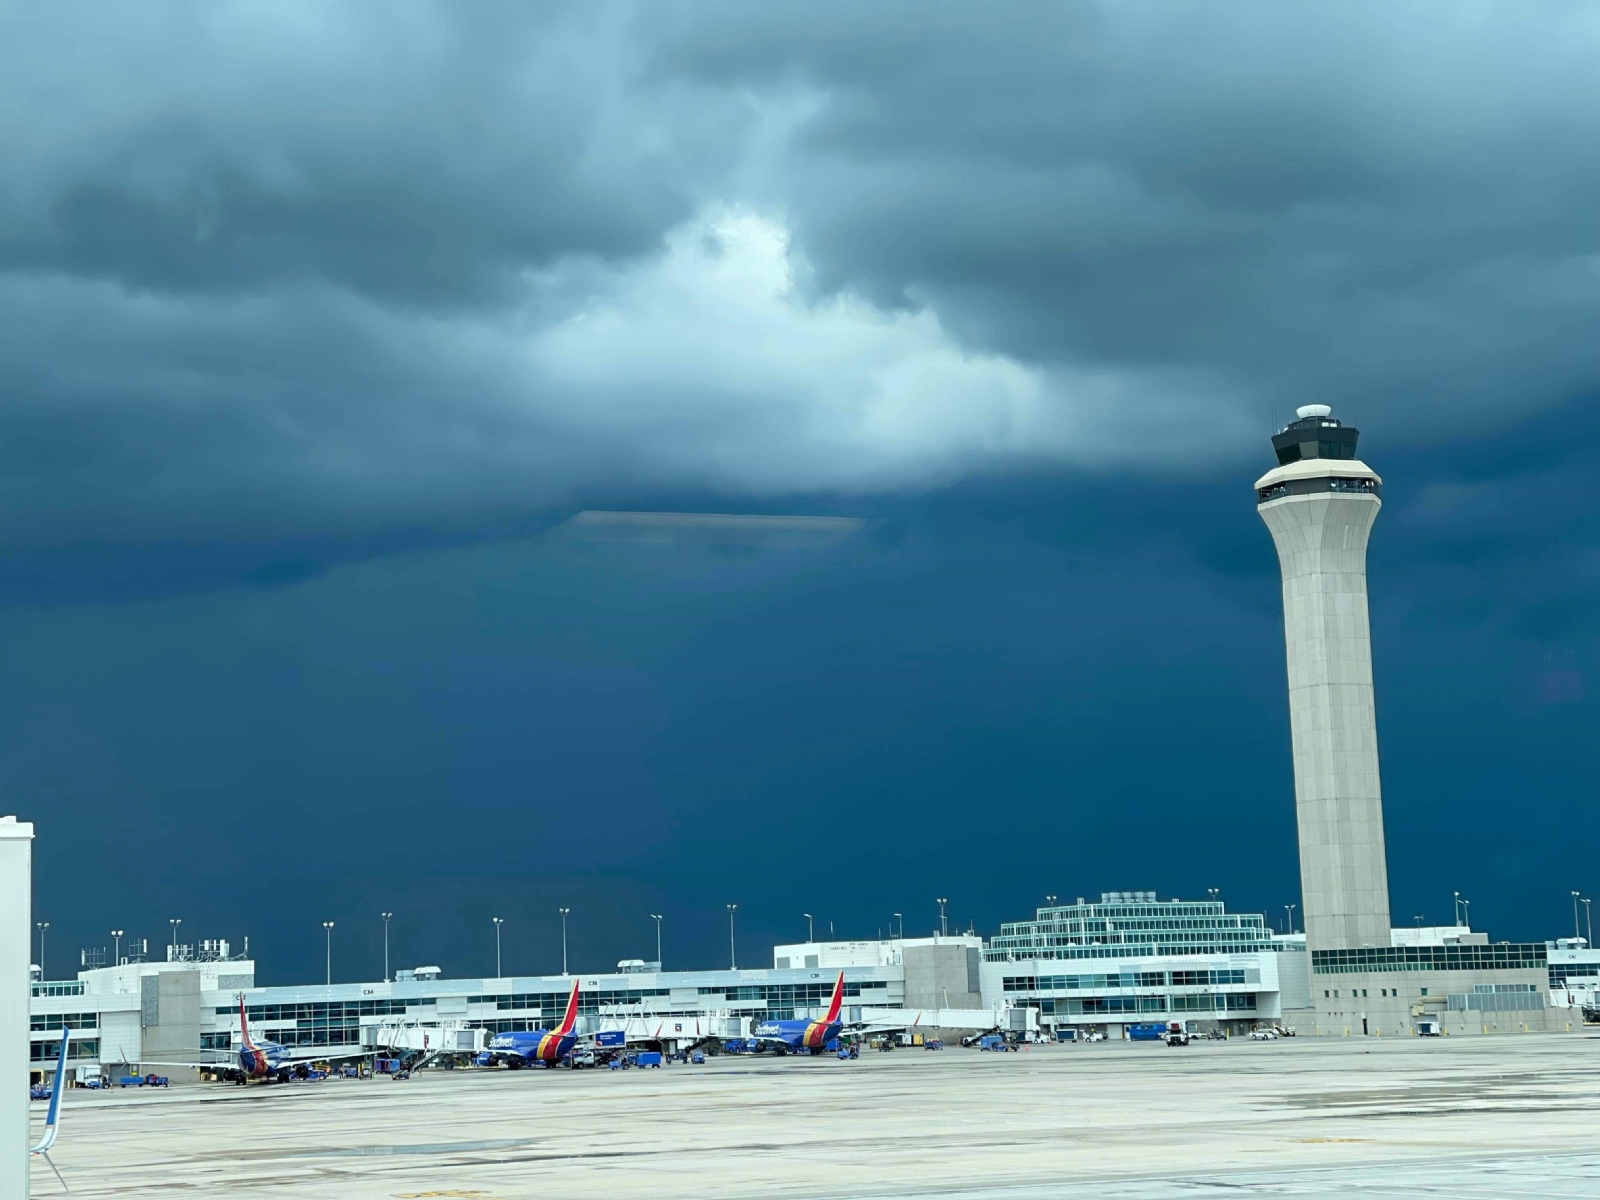 Aeropuerto de Denver restablece operaciones tras apagón, advierte retrasos por tormentas